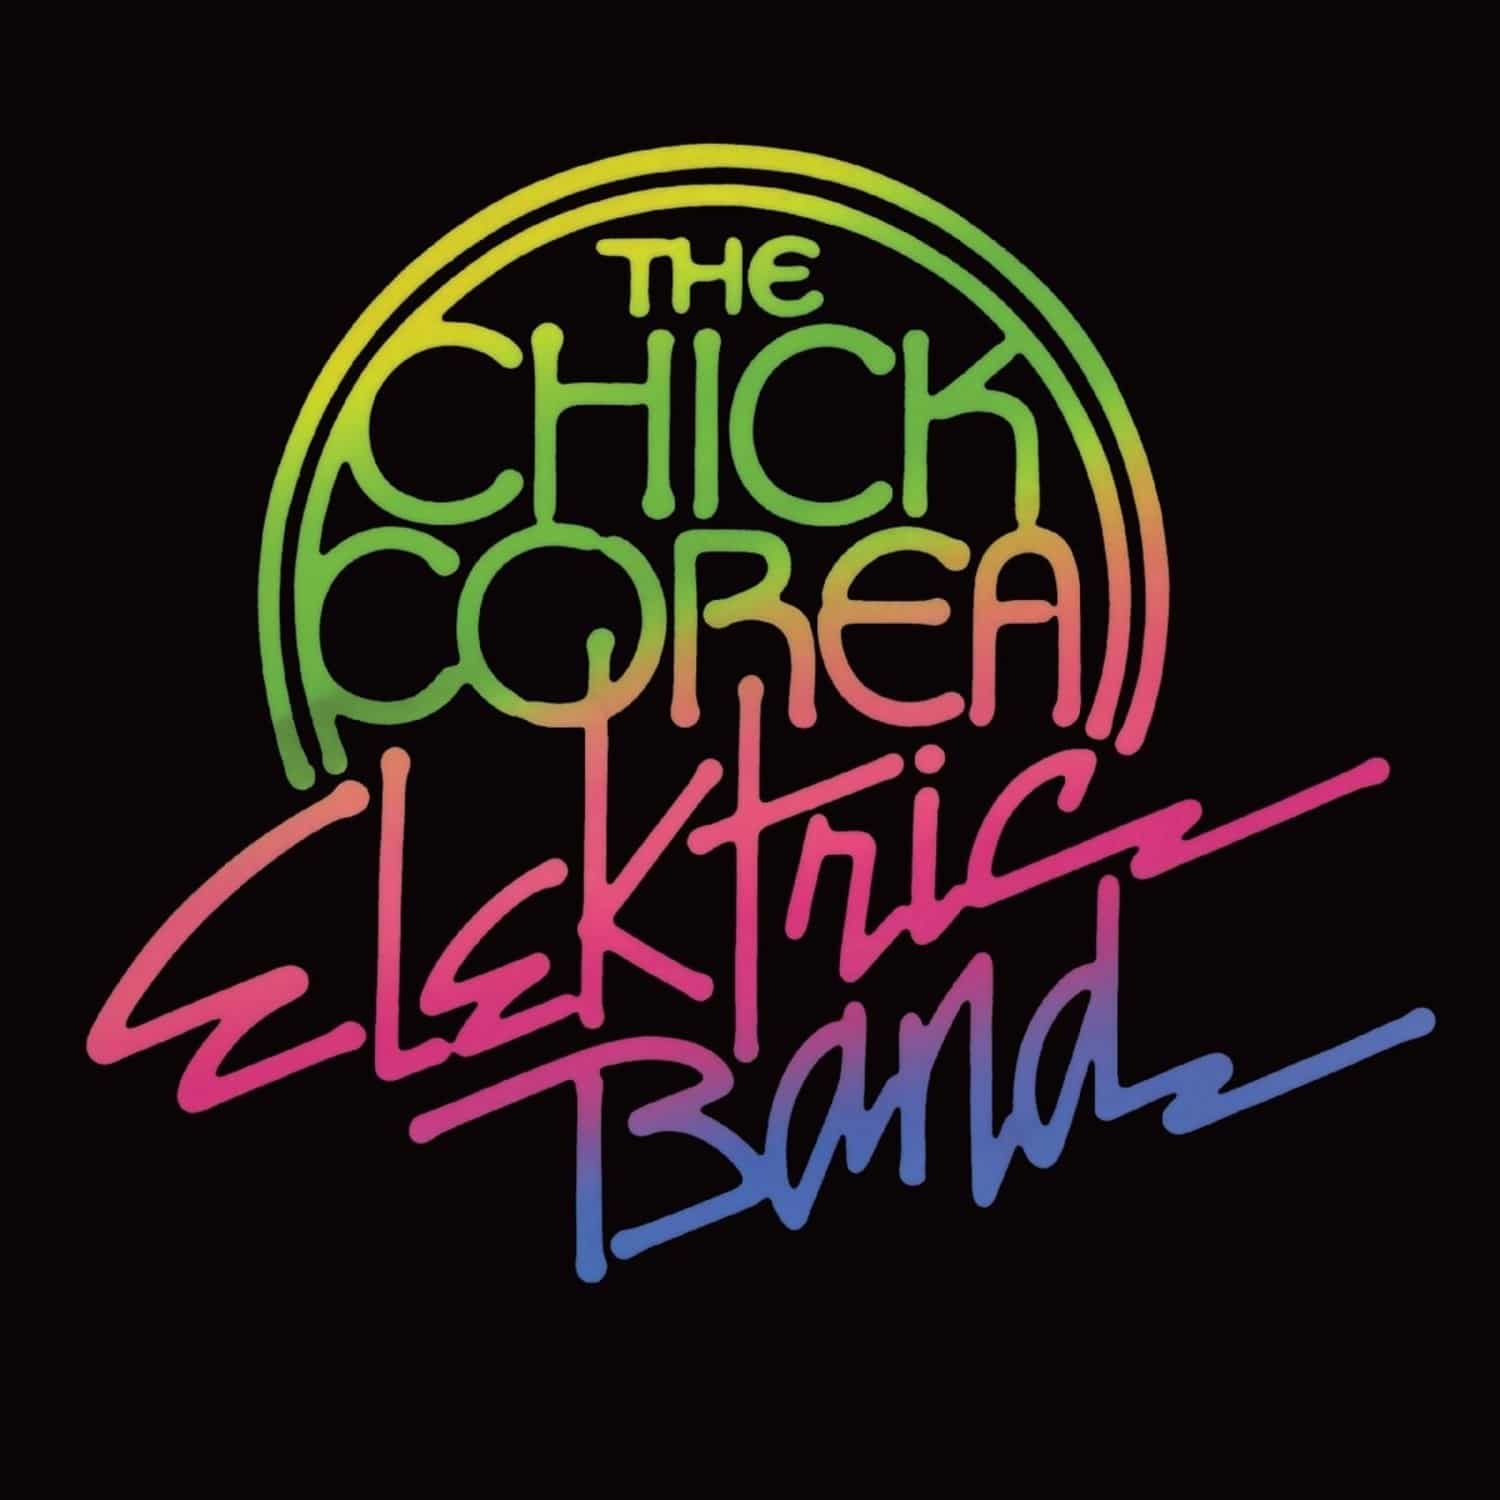 Chick Corea Elektric Band - CHICK COREA ELEKTRIC BAND 